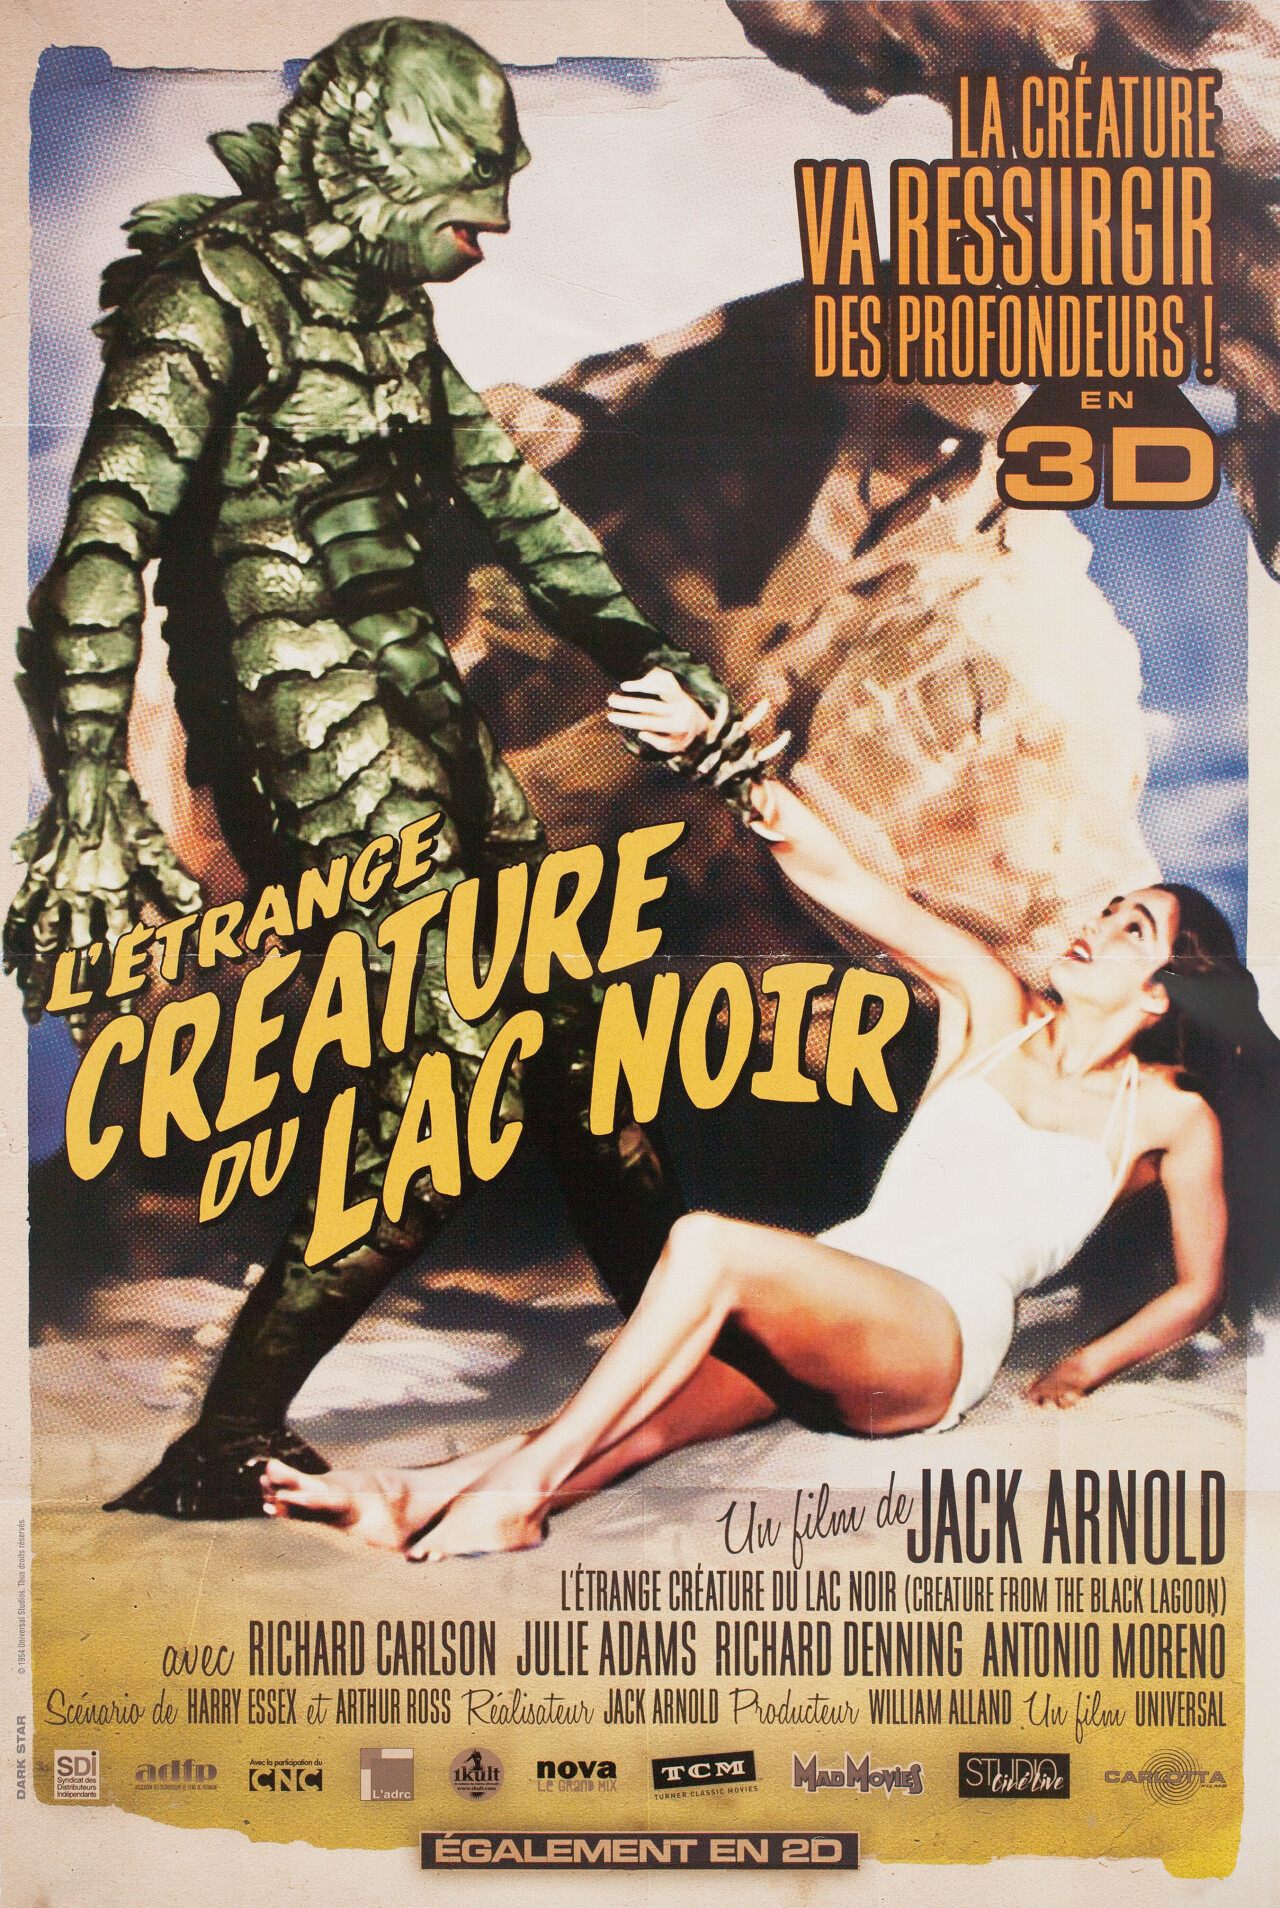 Тварь из Чёрной лагуны (Creature from the Black Lagoon, 1954), режиссёр Джек Арнольд, французский постер к фильму (ужасы)